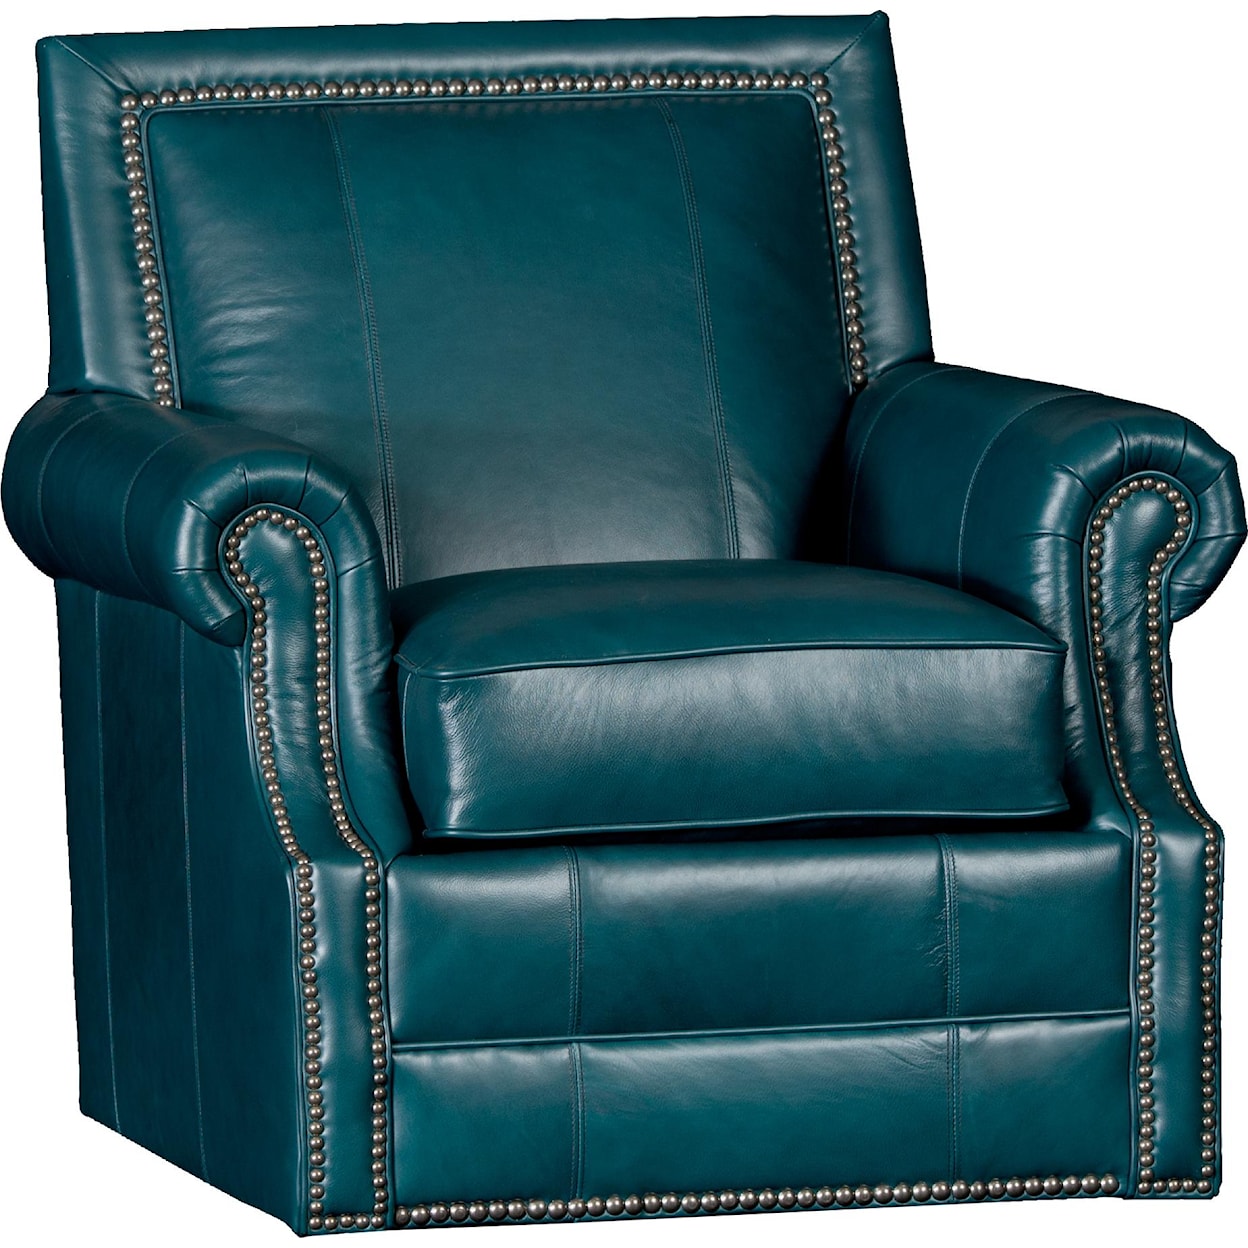 Mayo 4110 Swivel Chair